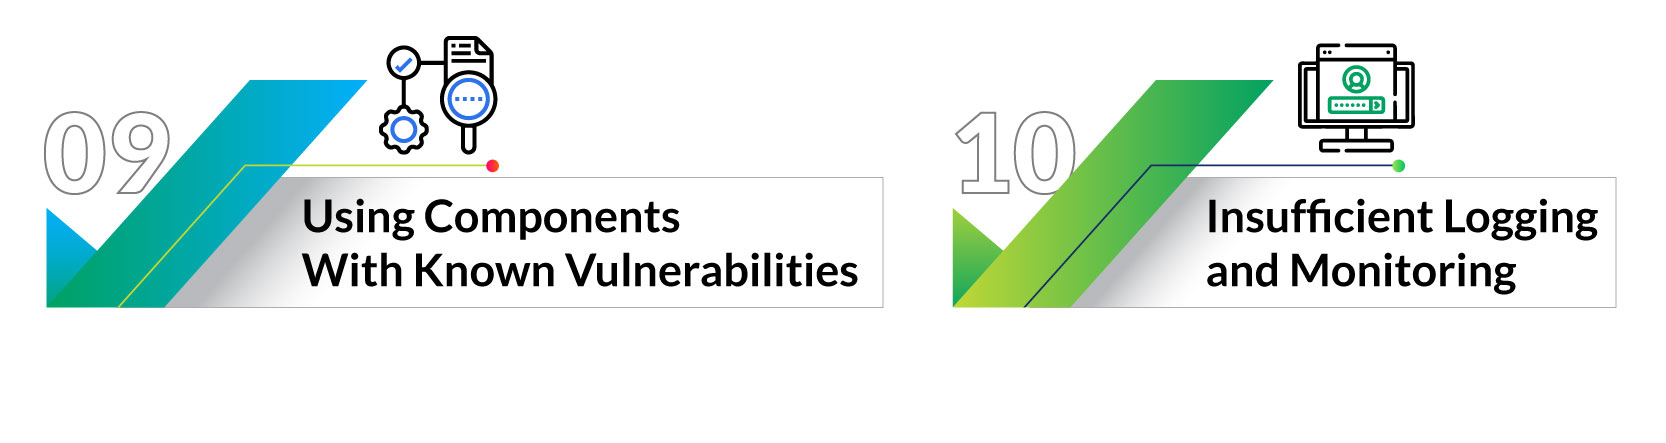 Top-10-OWASP-Vulnerabilities-Xoriant-5